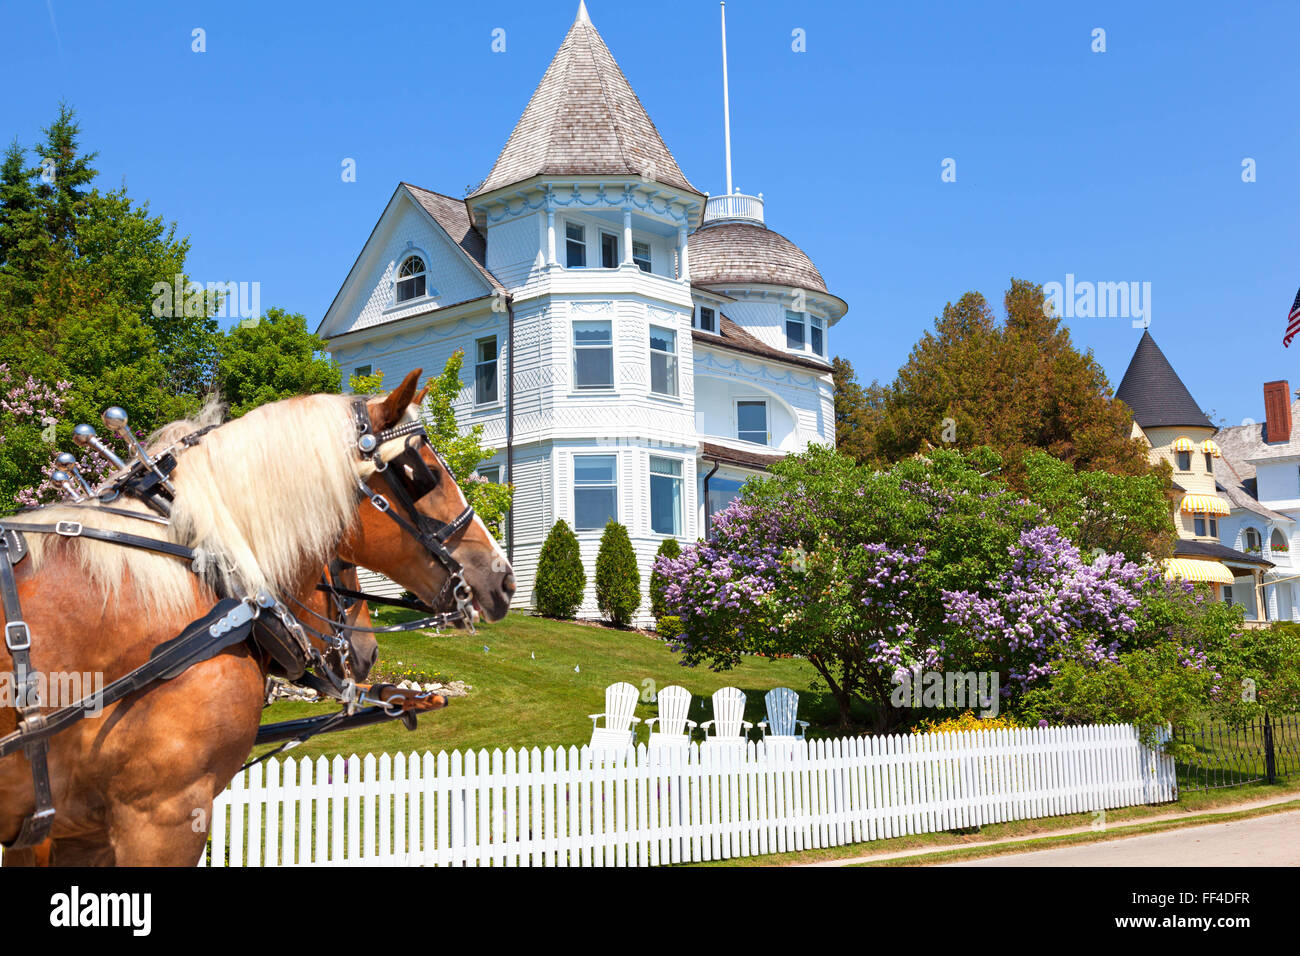 Les chevaux et la maison Victorienne historique sur l'île Mackinac dans le Michigan. Lilac bush en pleine floraison Banque D'Images